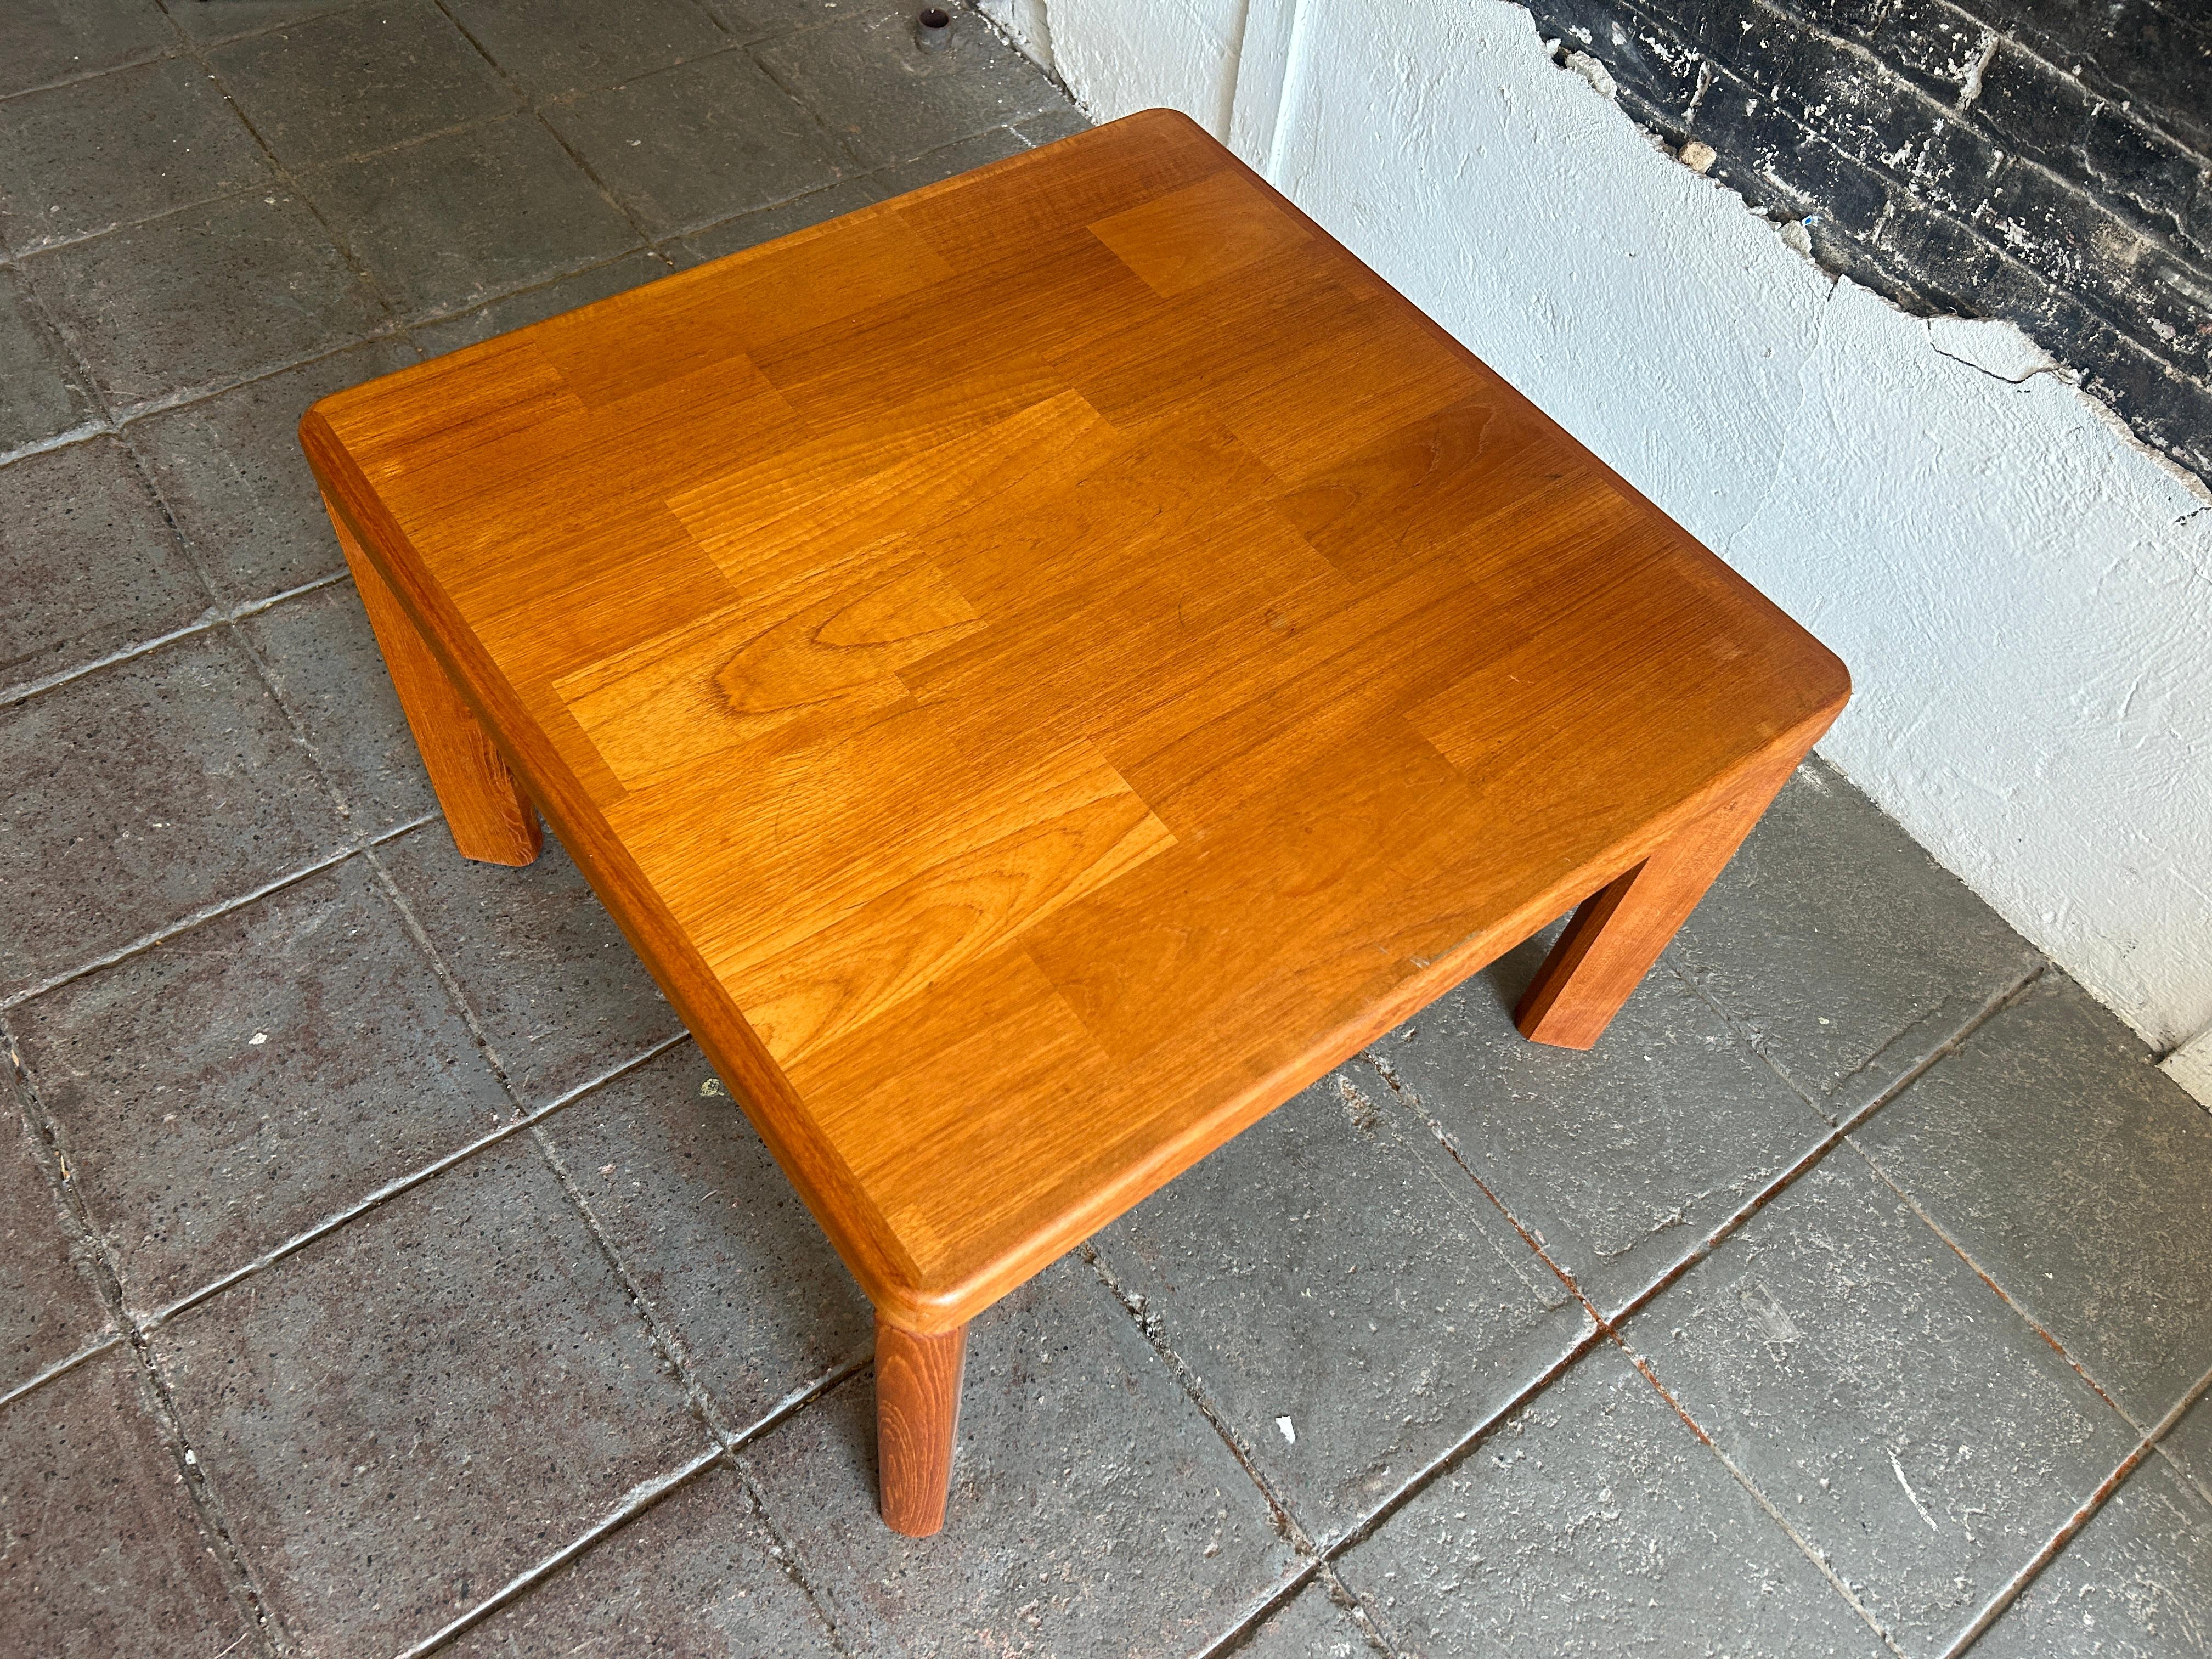 Table basse carrée en teck moderne danois du milieu du siècle - Les pieds se déboîtent. Tout est très propre. Magnifique table basse en bois de teck. Pas de labels. Situé à Brooklyn NYC.

(2) tables assorties disponibles 